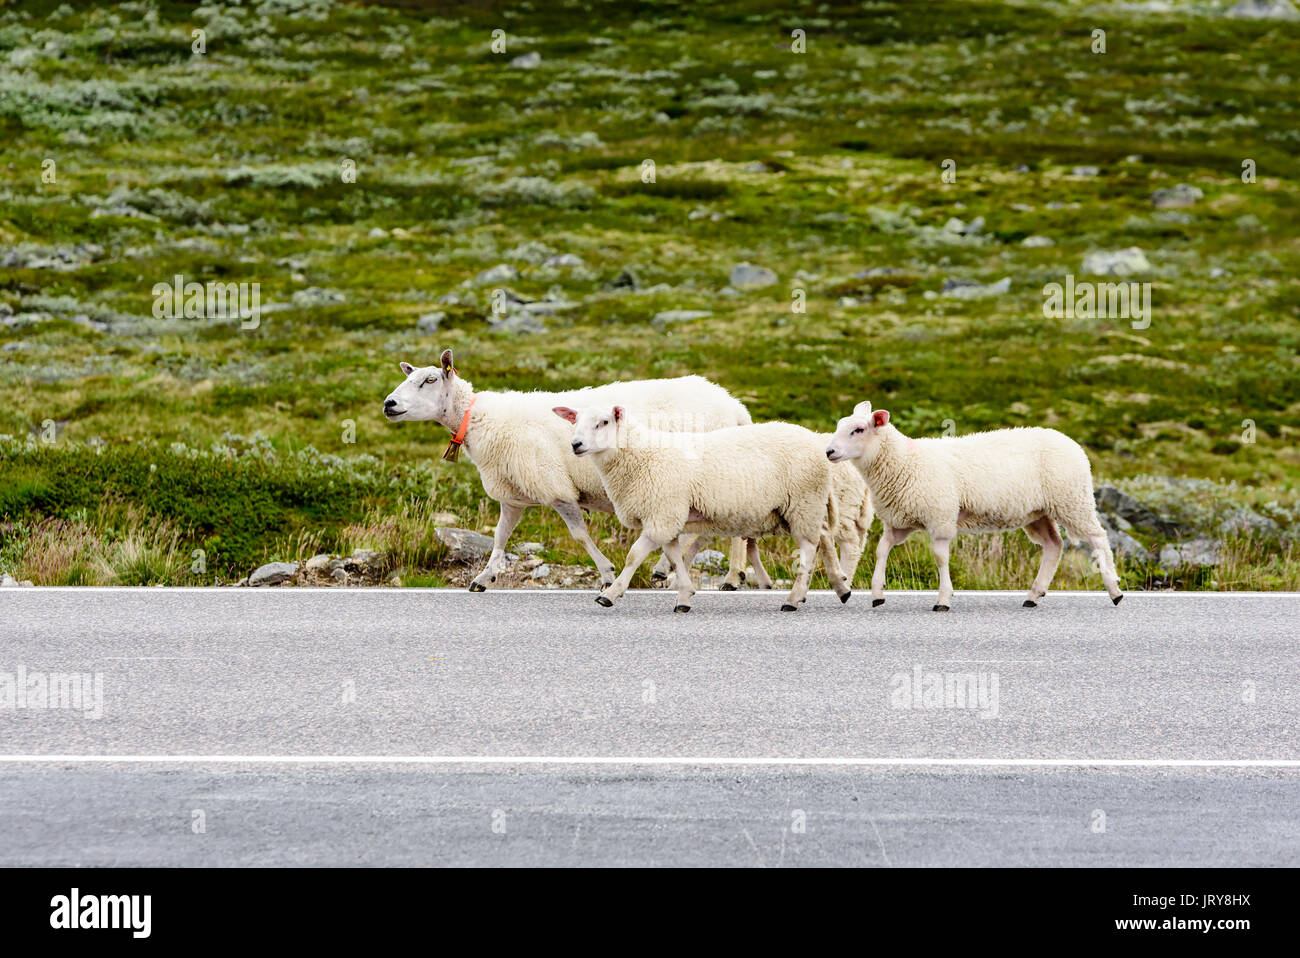 Roaming gratuito ovejas caminando en el país por carretera en Highland paisaje. Foto de stock